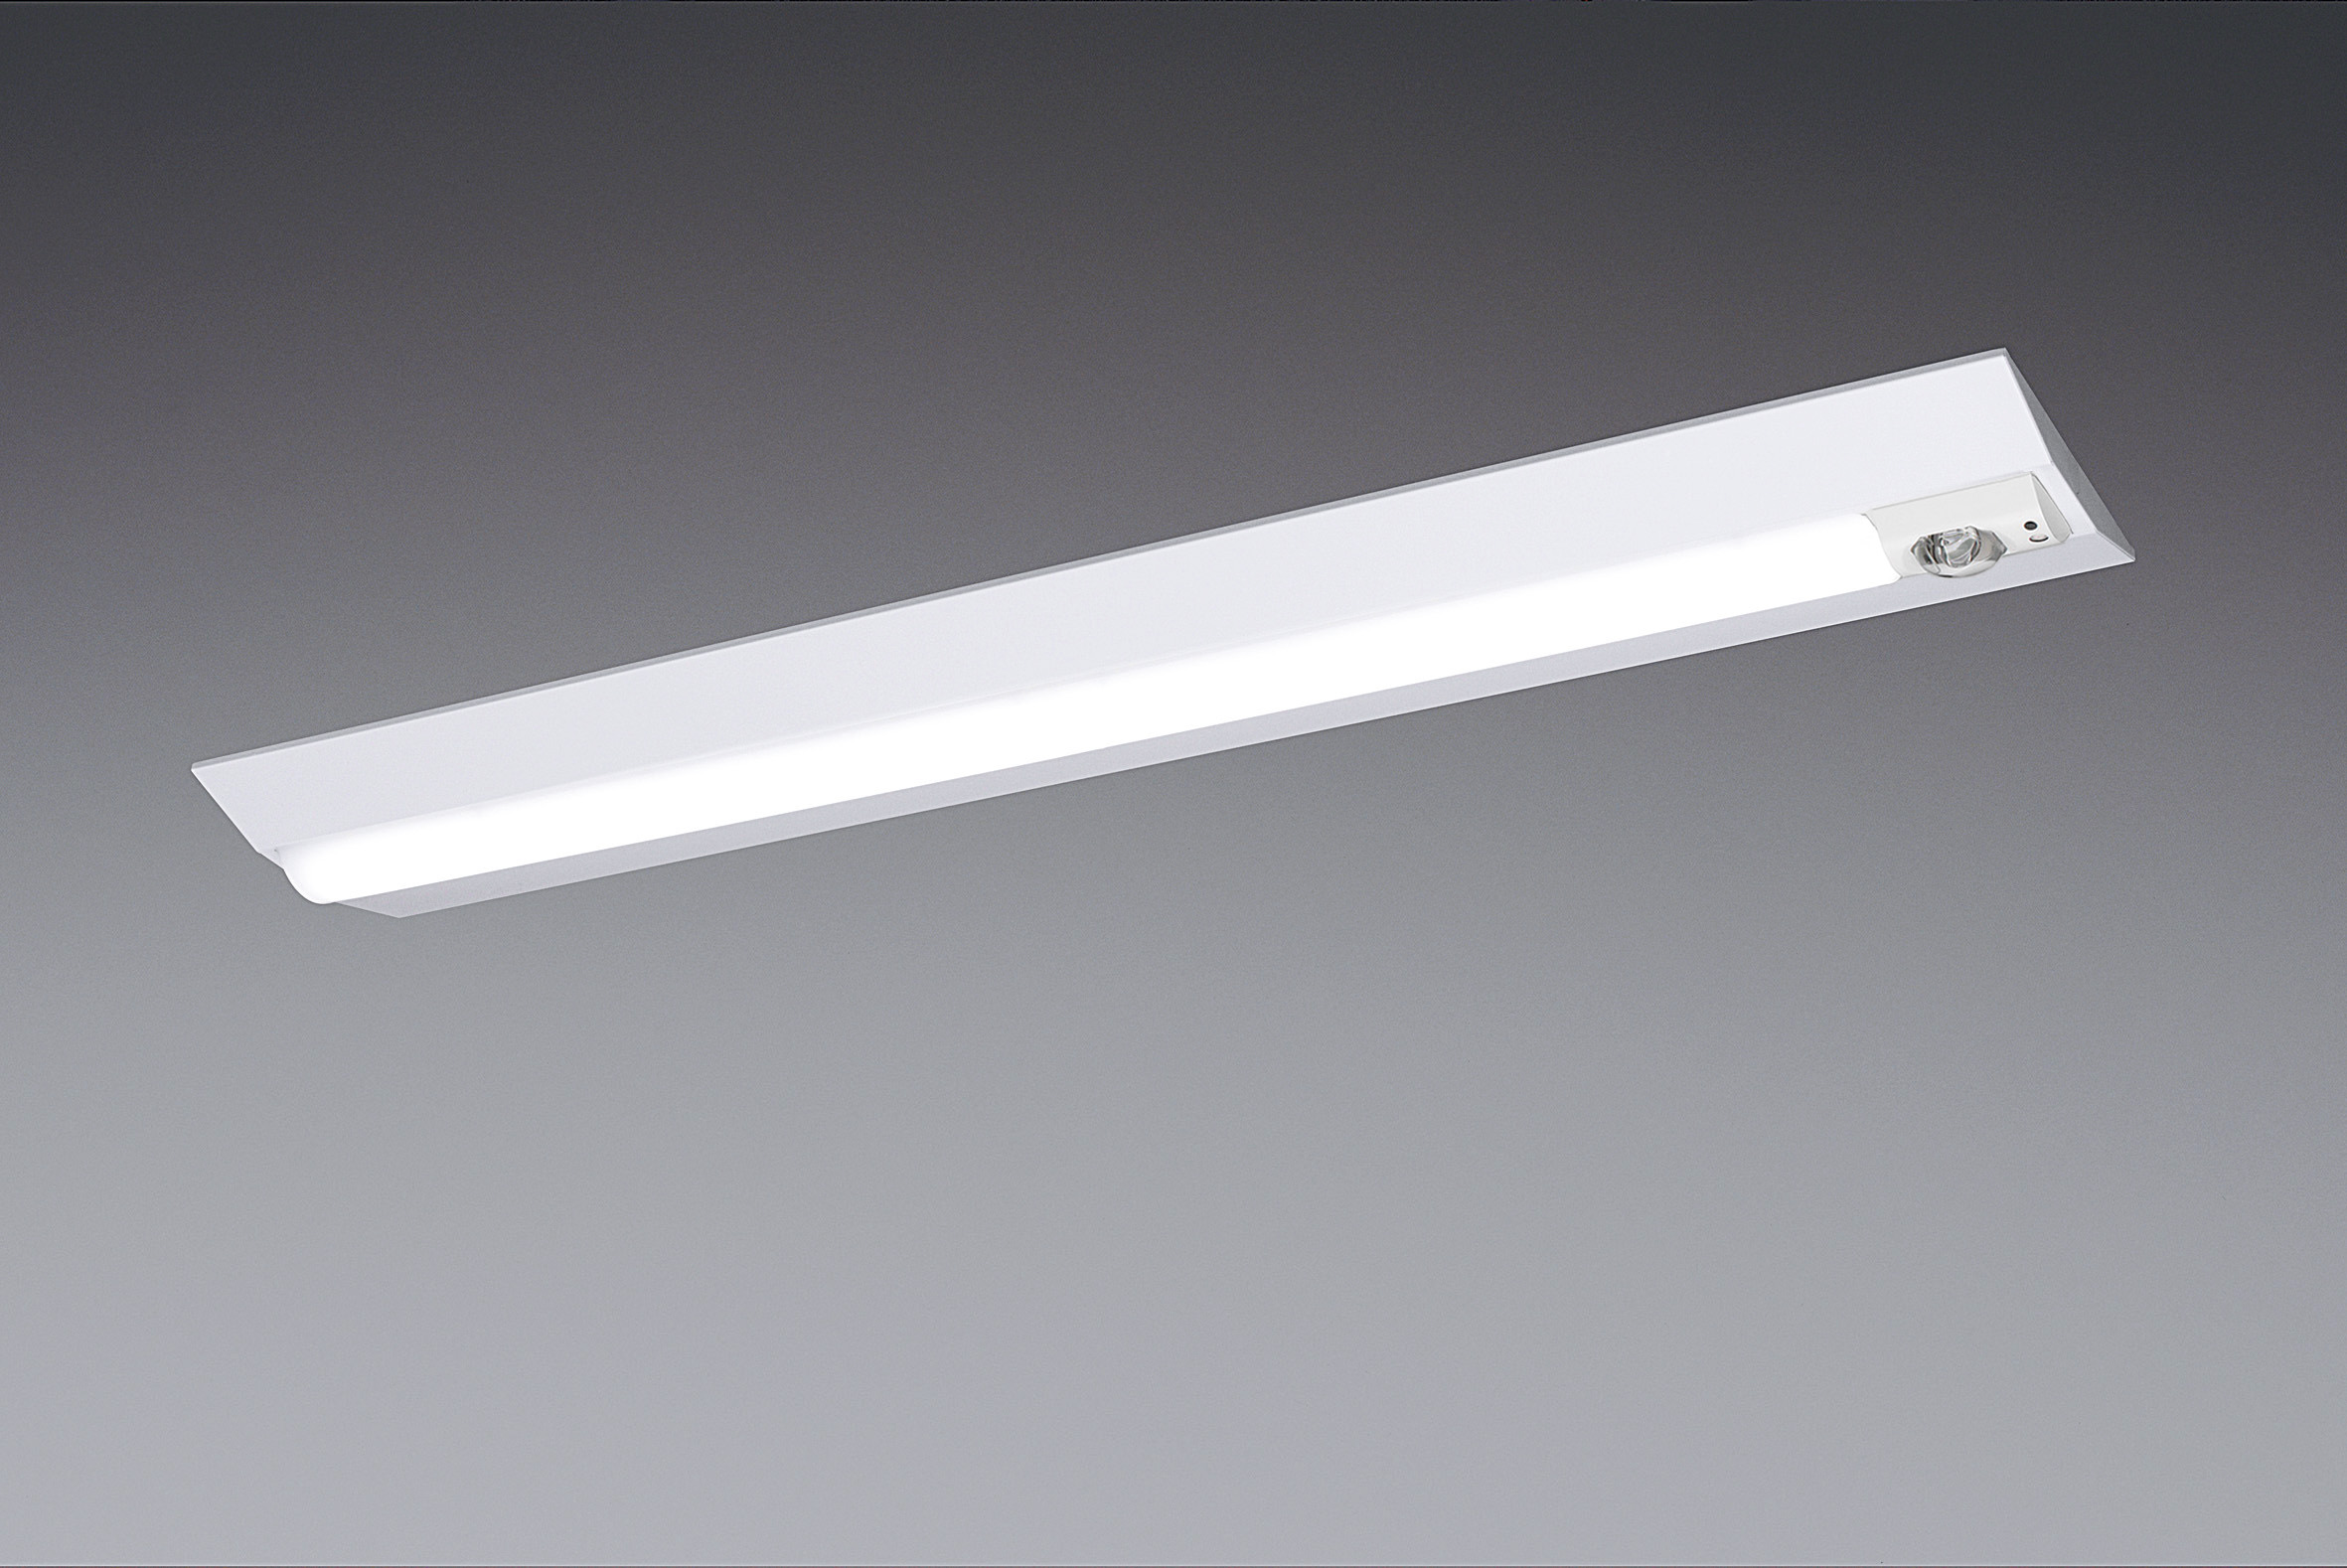 「一体型LEDベースライト iDシリーズ」などLED非常用照明器具品種拡充 | トピックス | Panasonic Newsroom